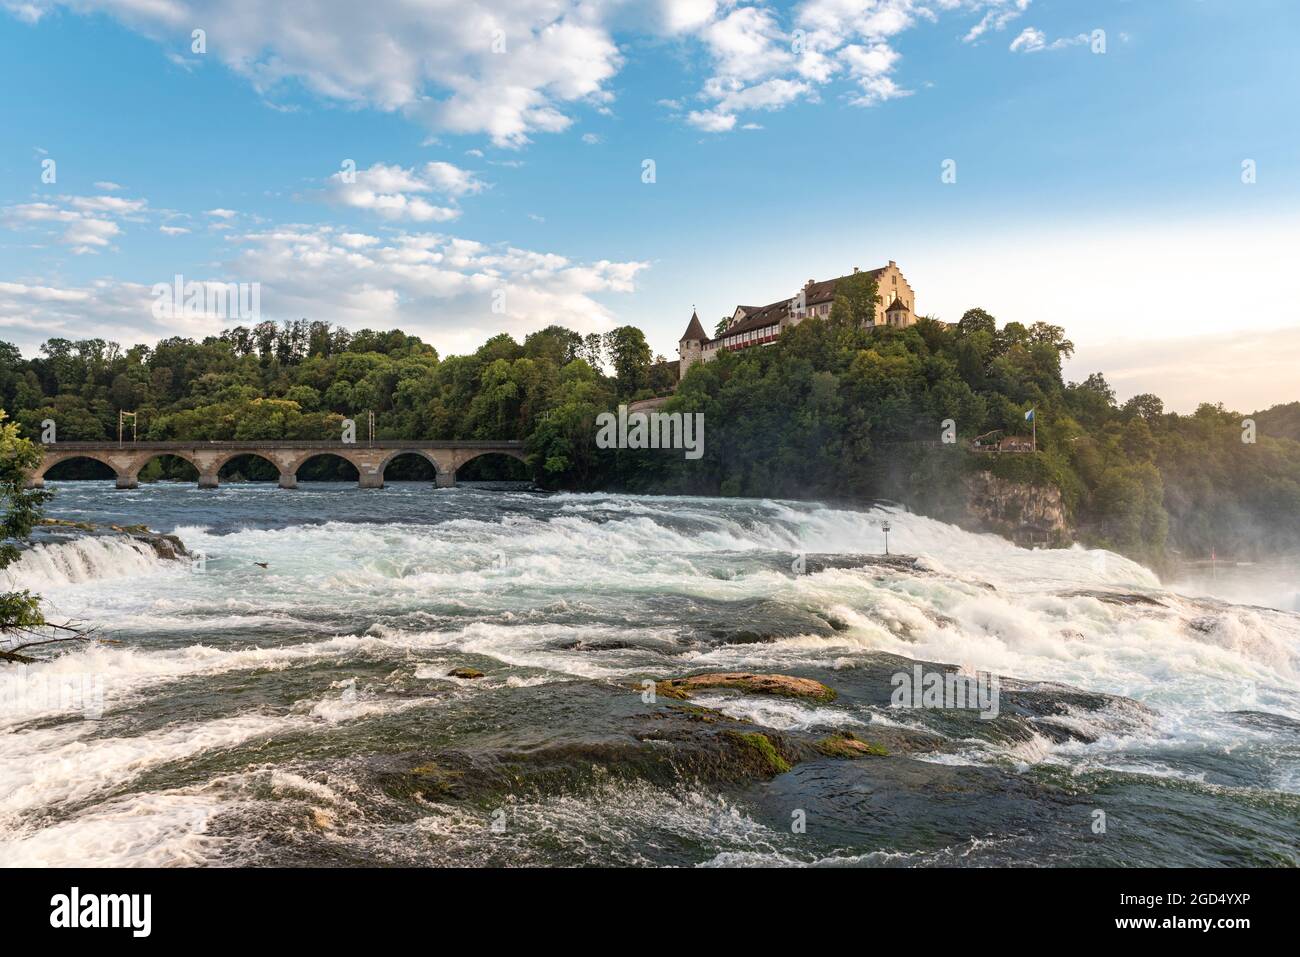 Geografía / viajes, Suiza, Schaffhausen, Neuhausen, Rhin Falls con el castillo de Laufen, DERECHOS ADICIONALES-LIQUIDACIÓN-INFO-NO DISPONIBLE Foto de stock